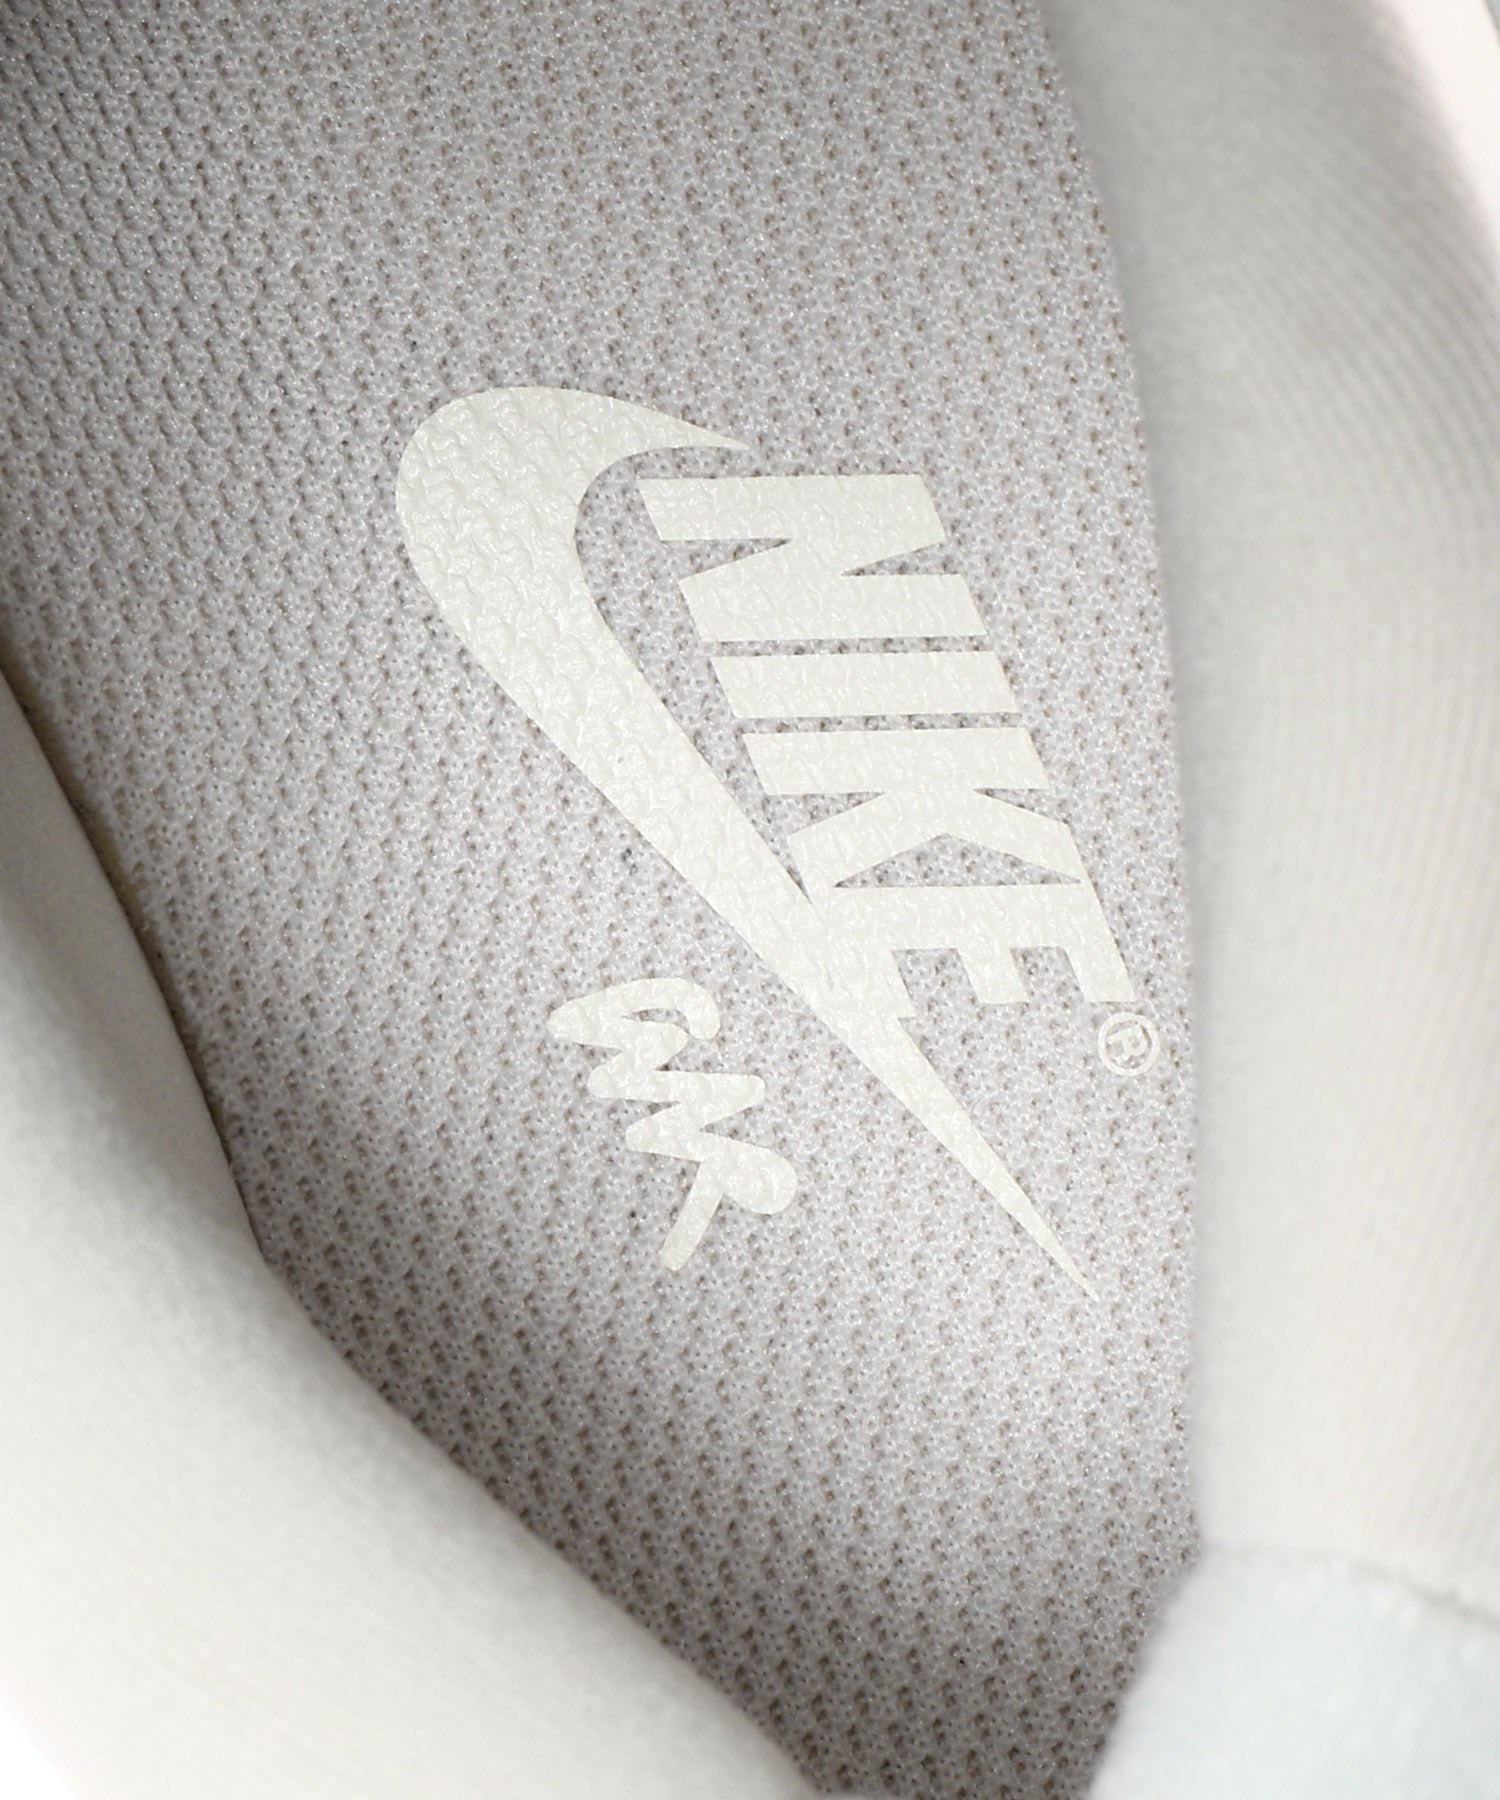 Nike Wmns Air Max 90 Futura